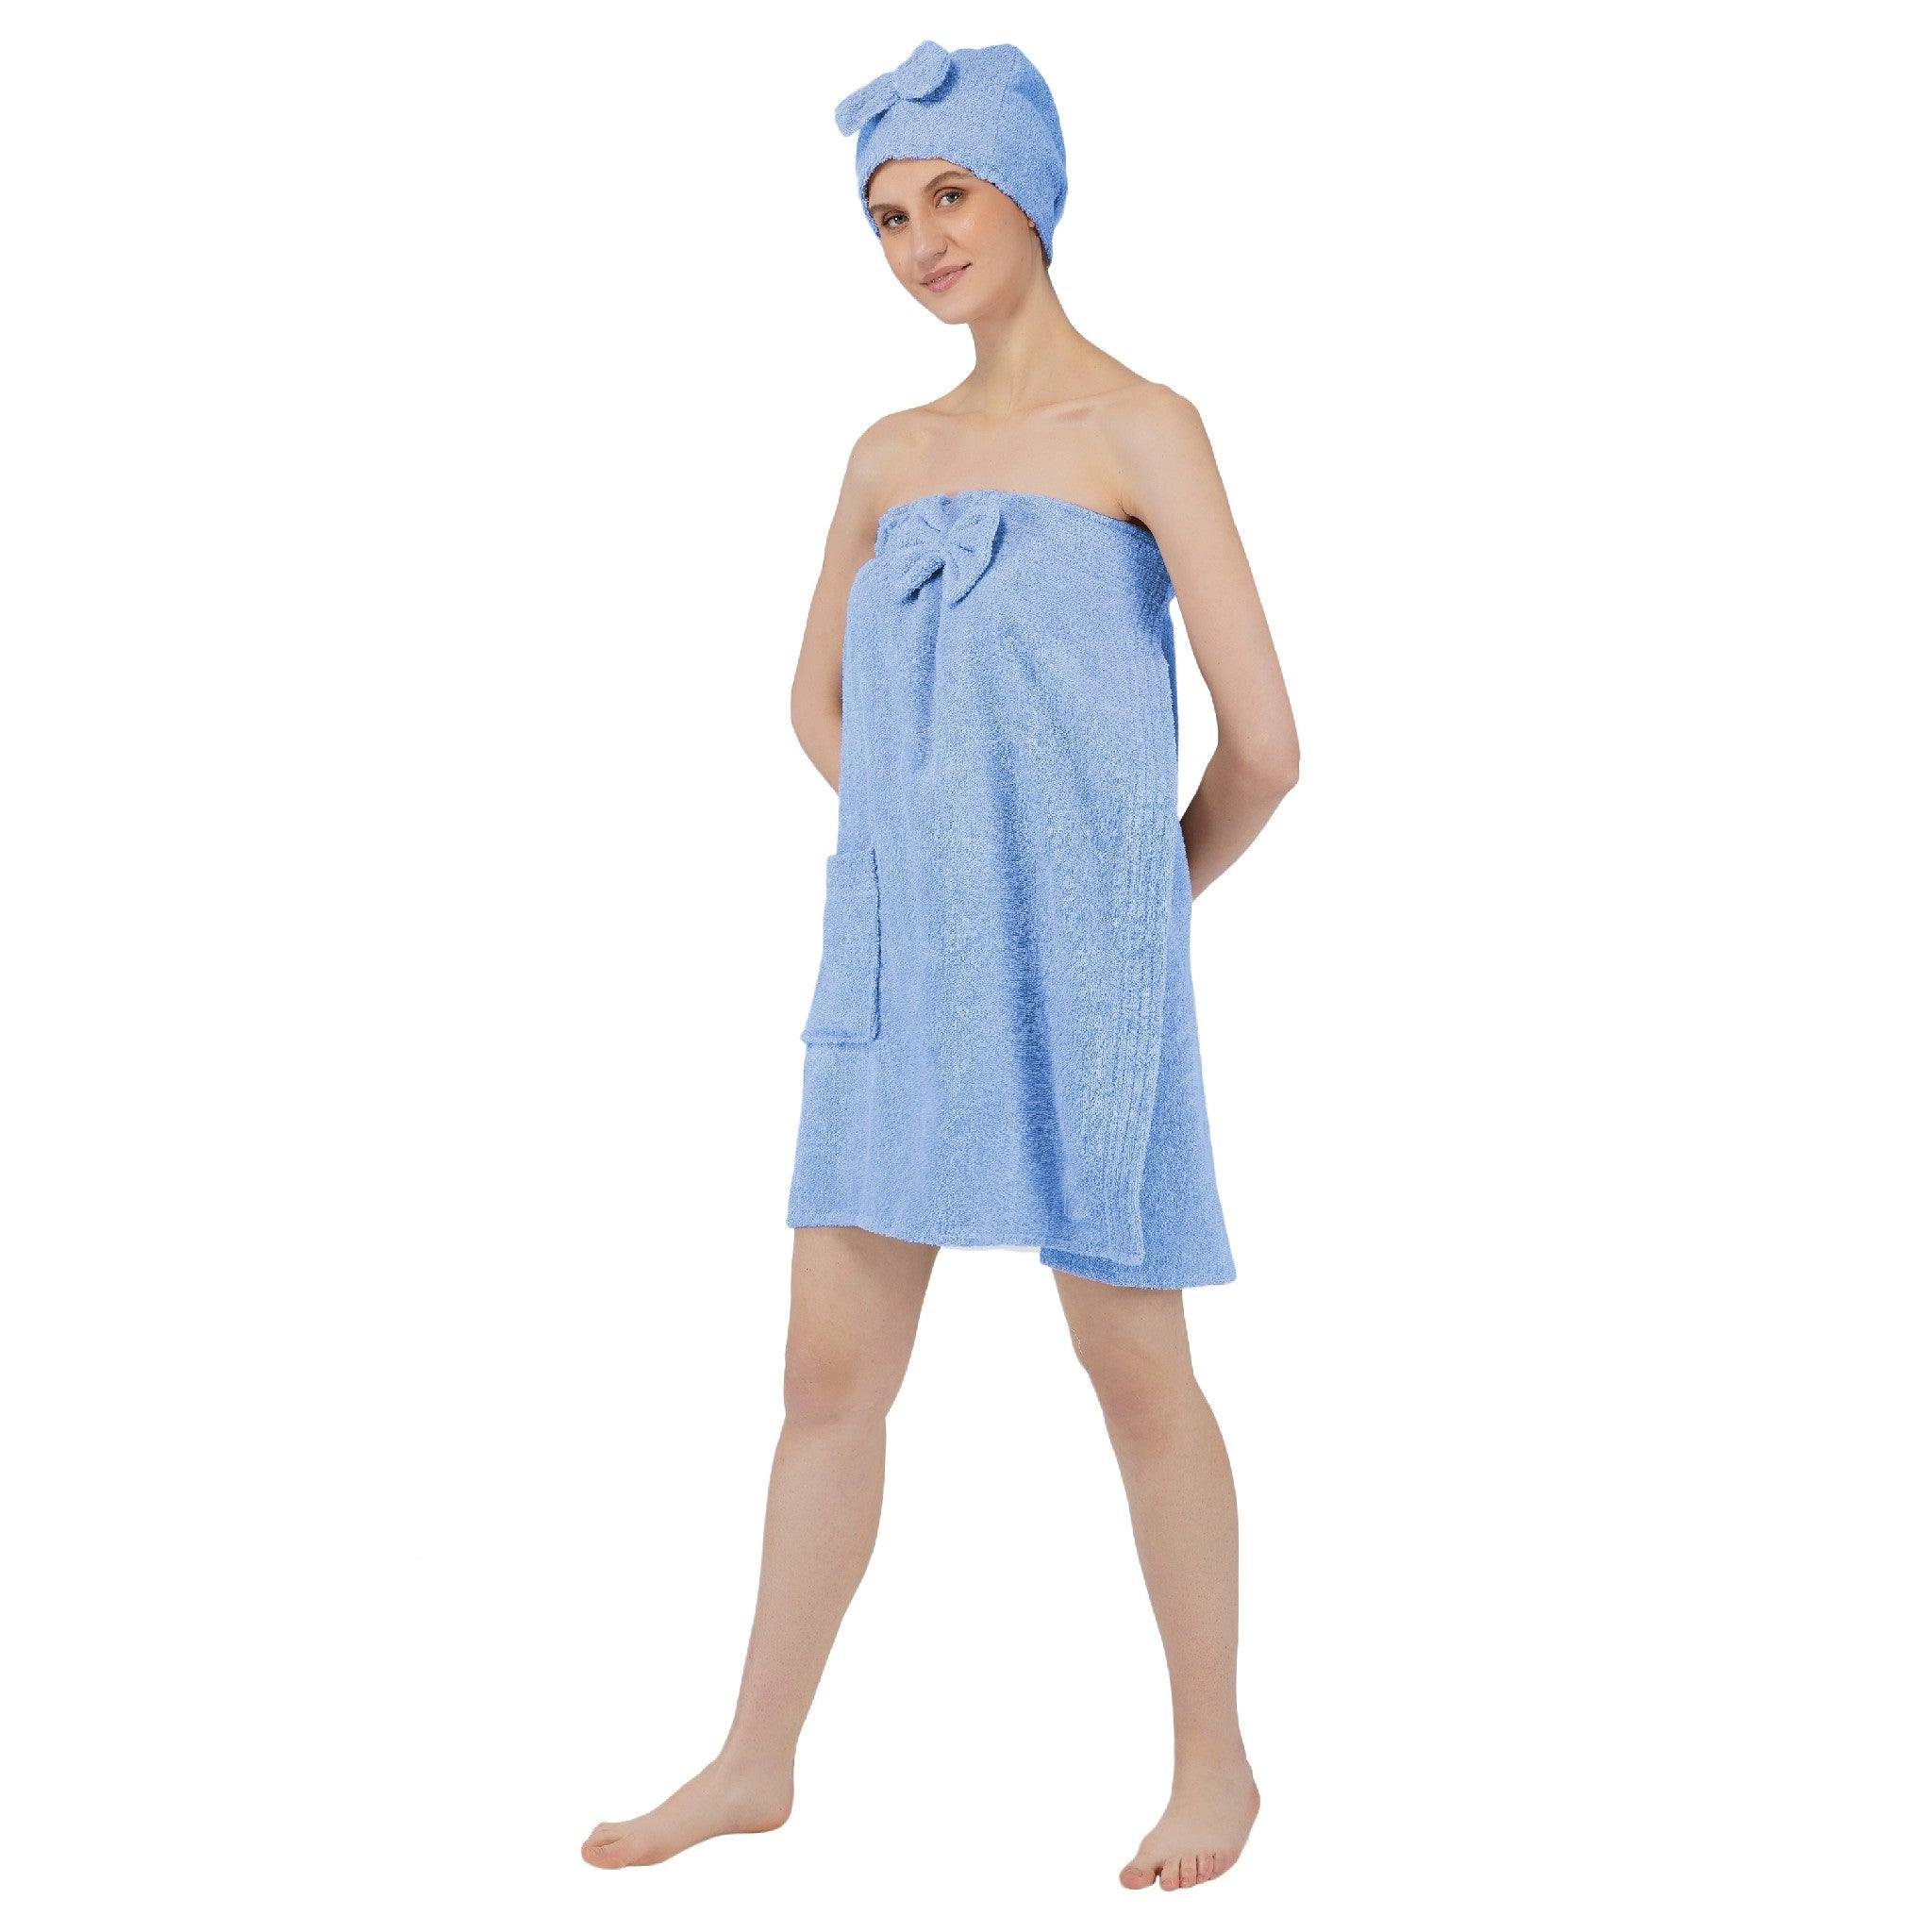 Women Cotton Body Wrap Bath Towel With Shower Cap - Blue